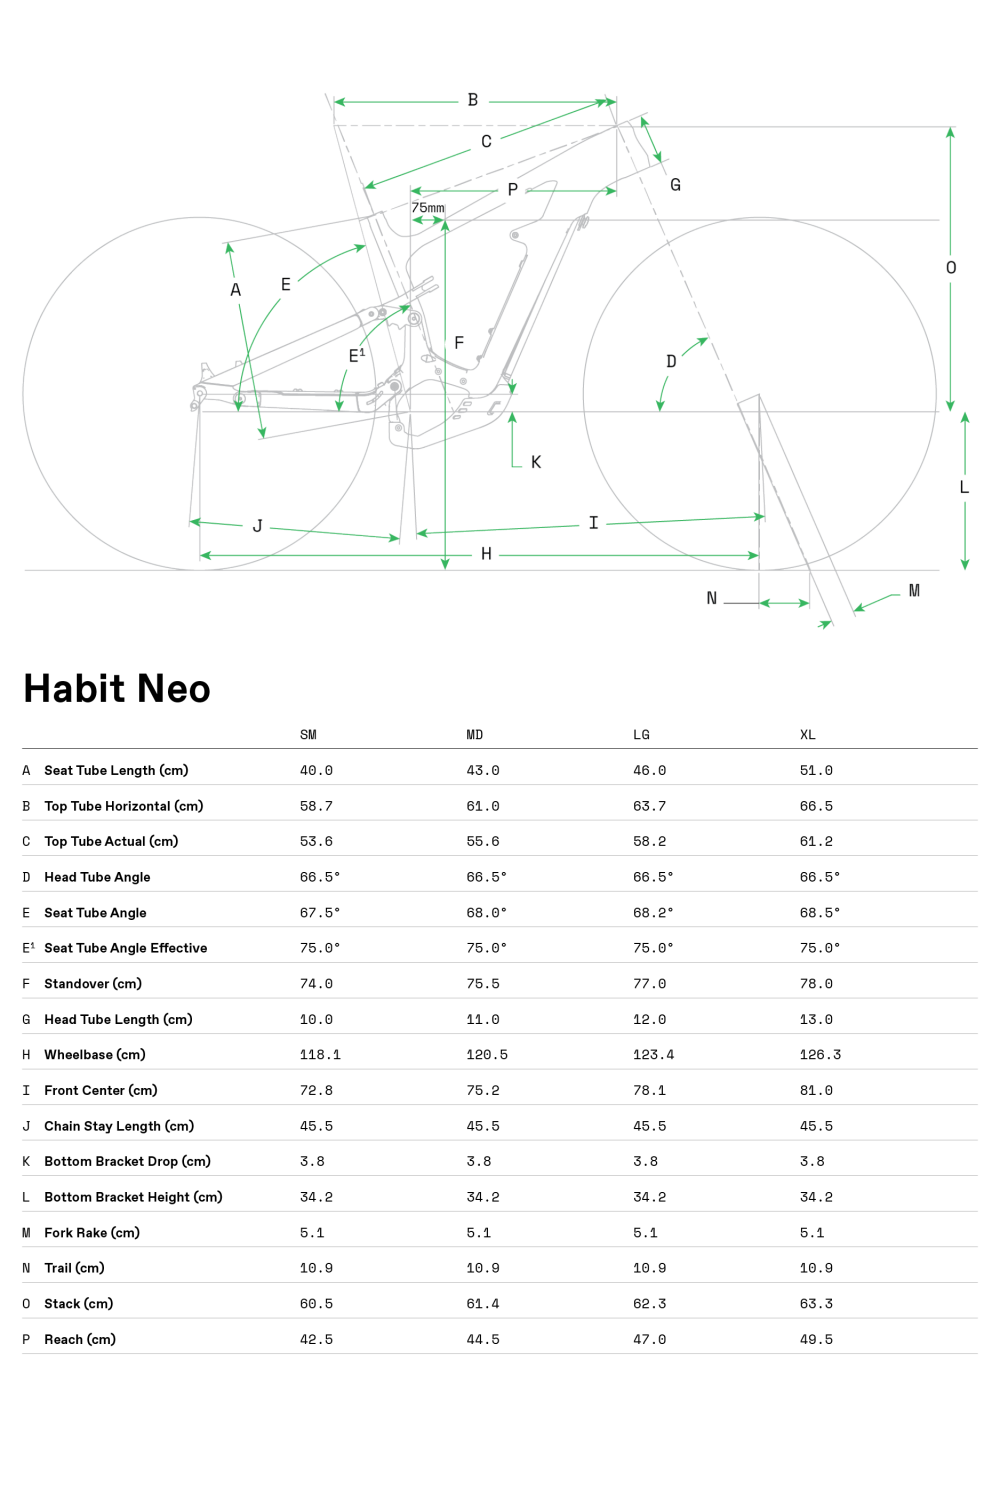 Habit Neo 4 - 